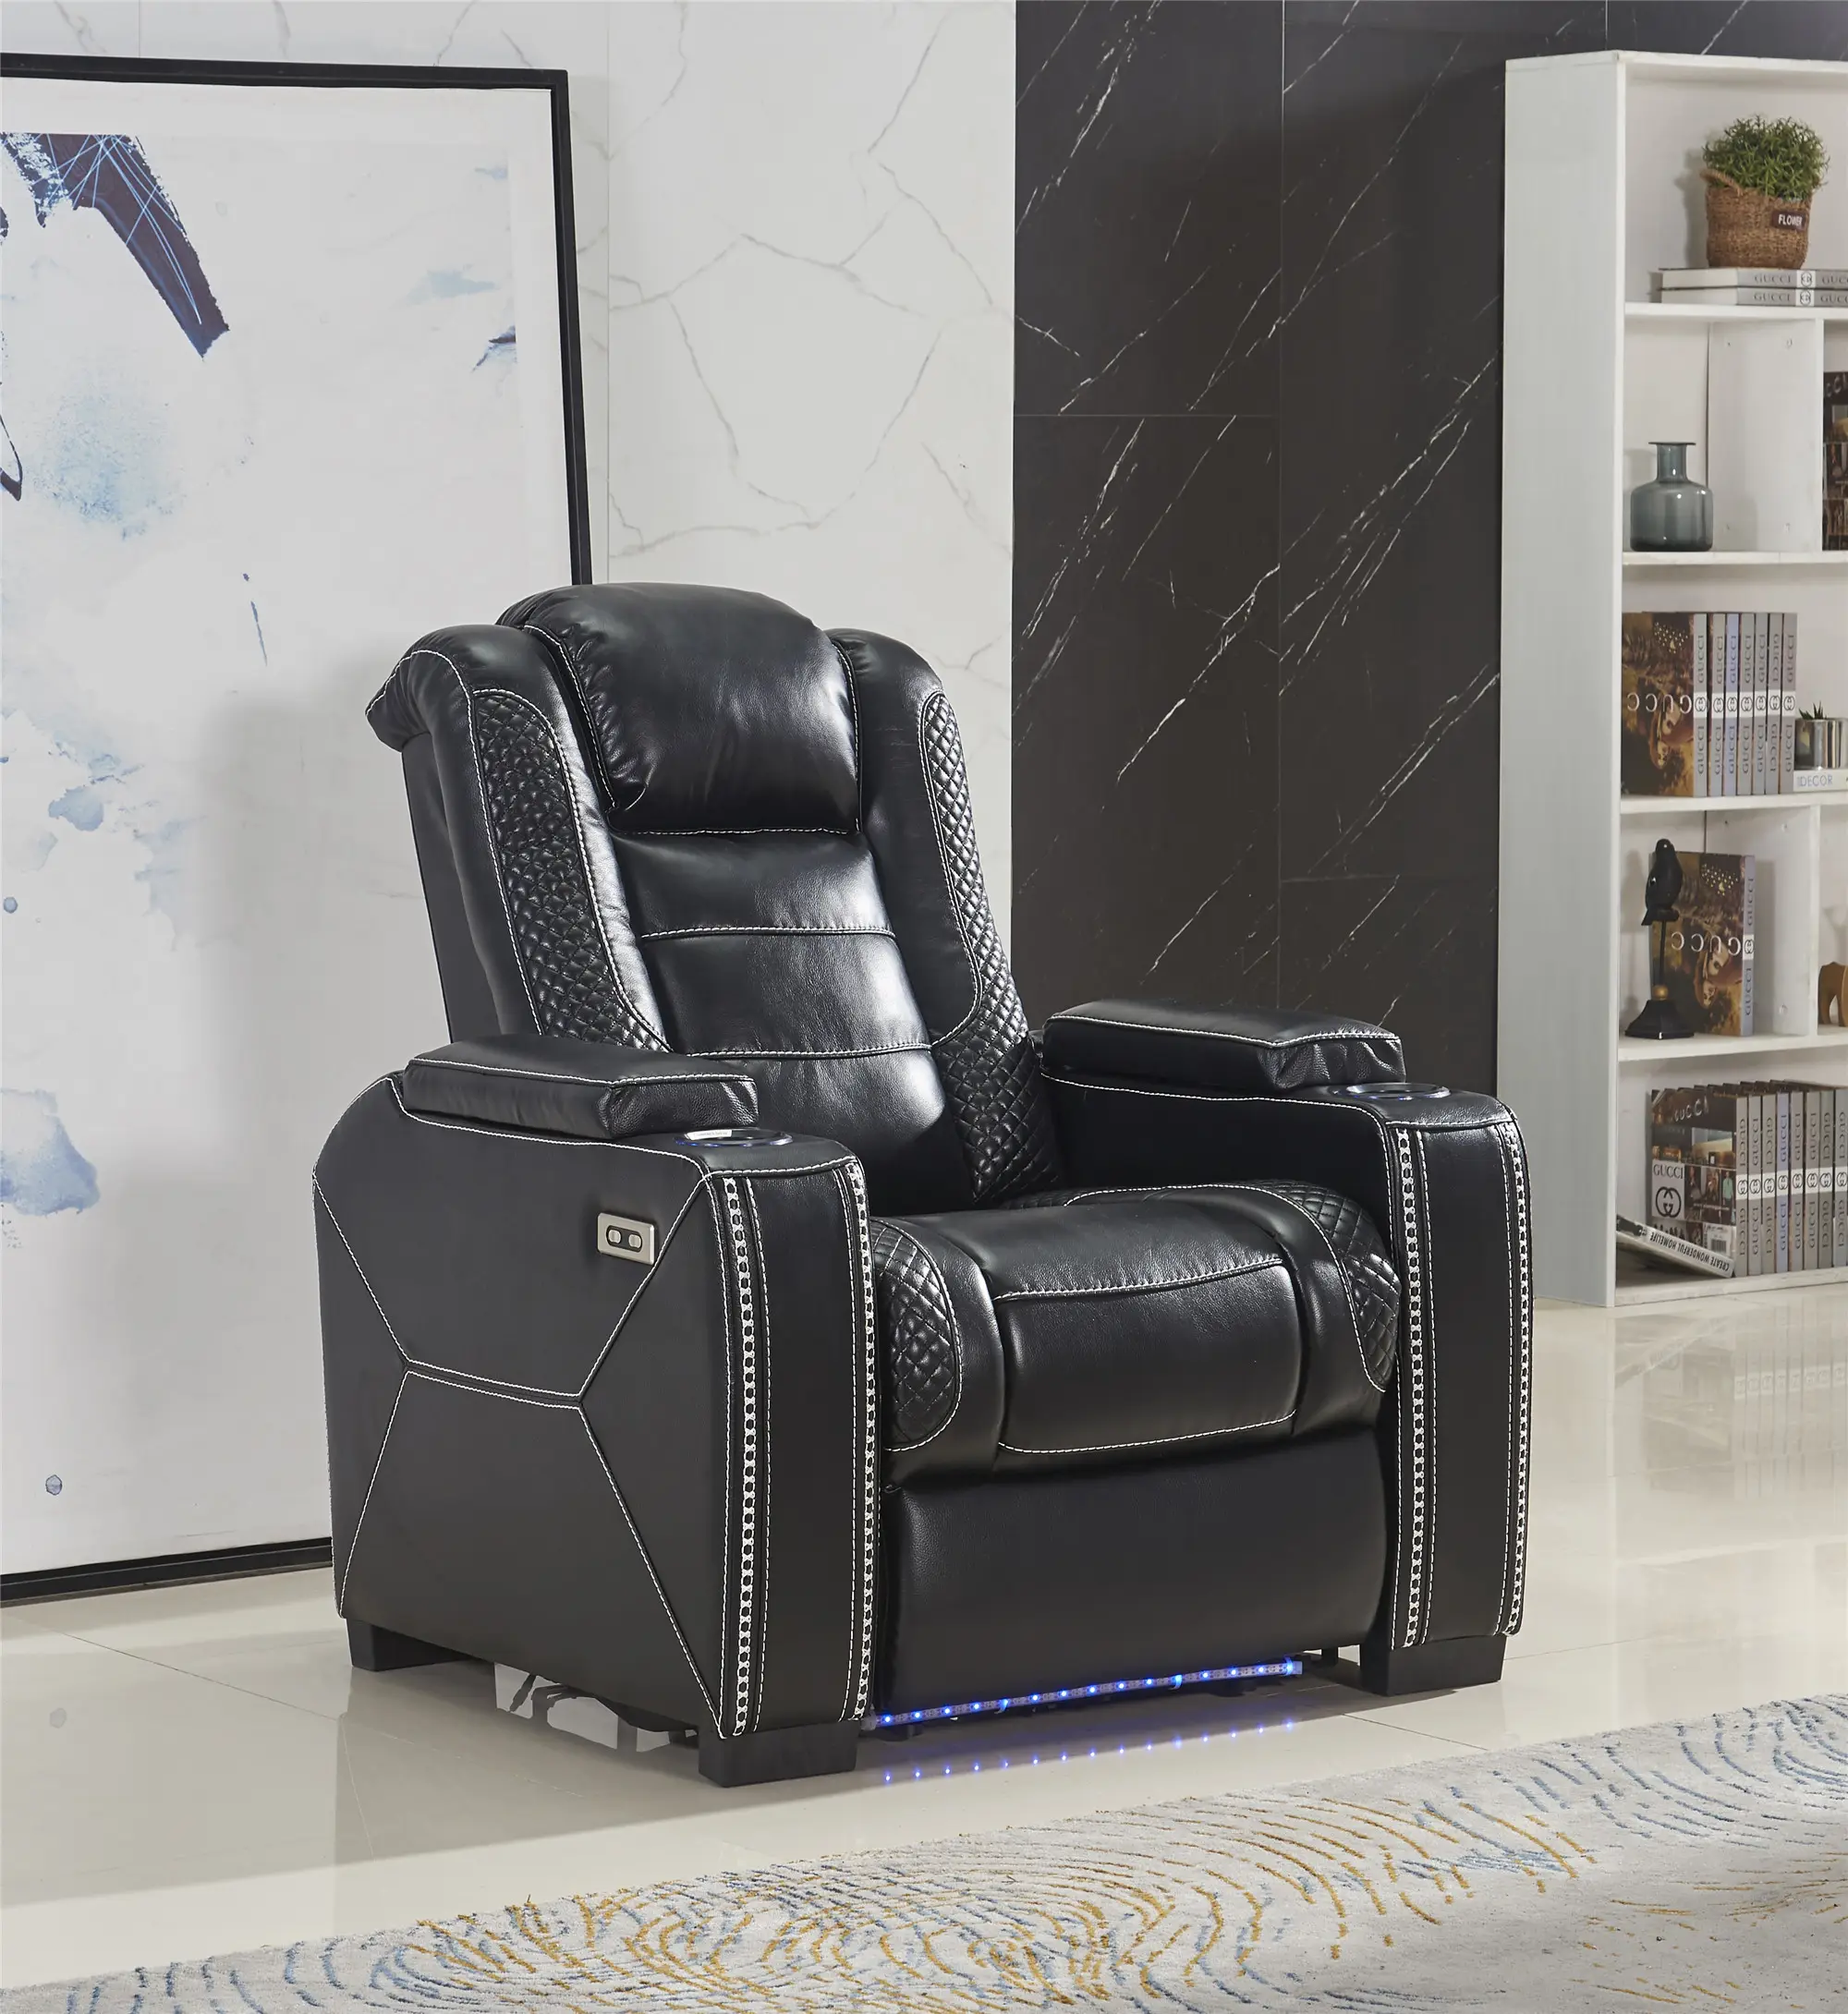 Lujo Home Cinema Sillón reclinable de cuero de aire para muebles para el hogar